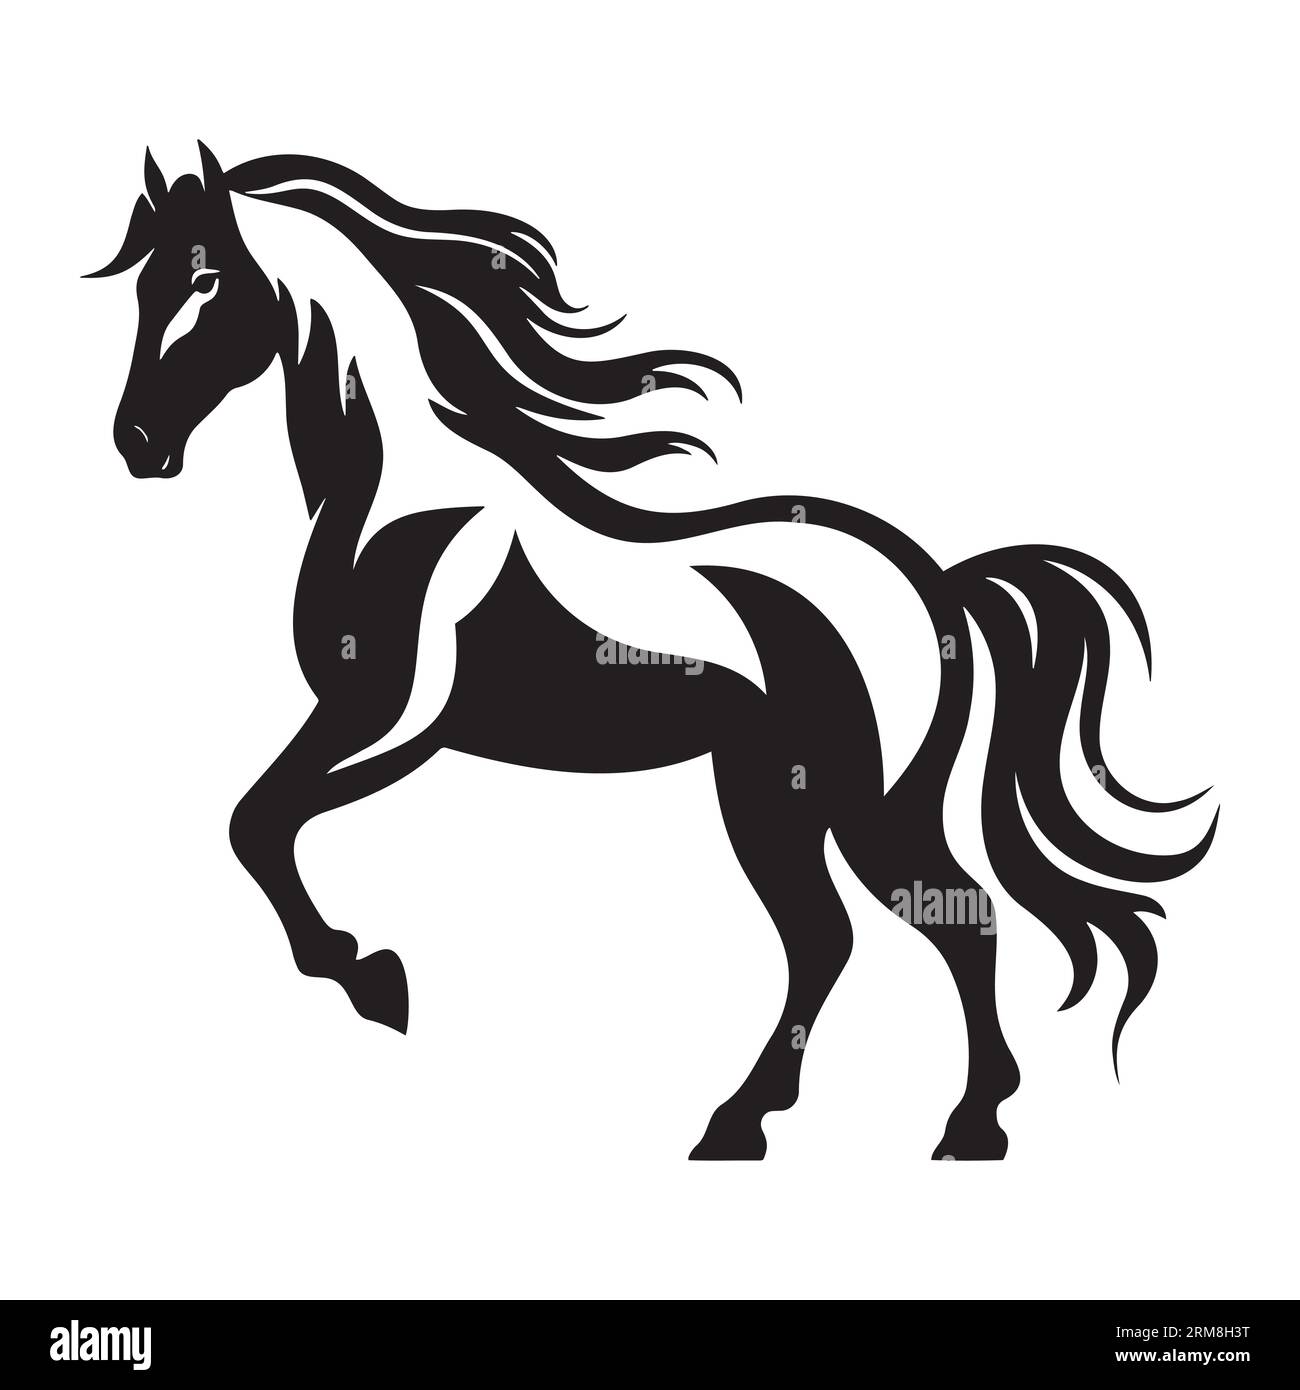 Die Abbildungen und Clipart. Eine schwarz-weiße Silhouette eines Pferdes Stock Vektor